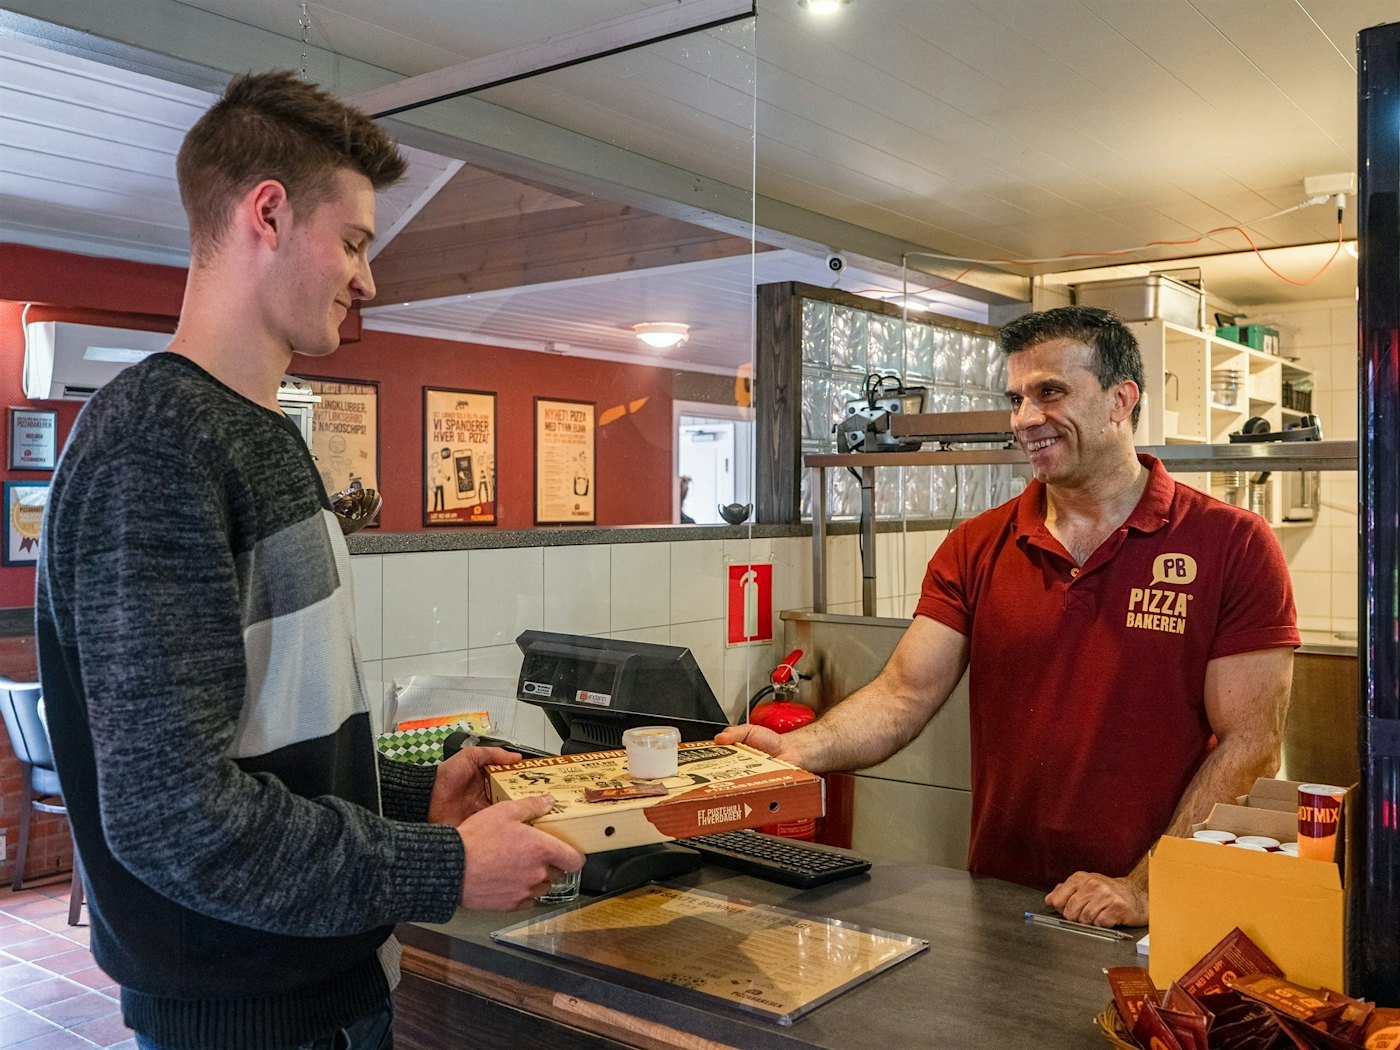 Der Kellner liefert Pizza zum Mitnehmen an den Kunden. Foto